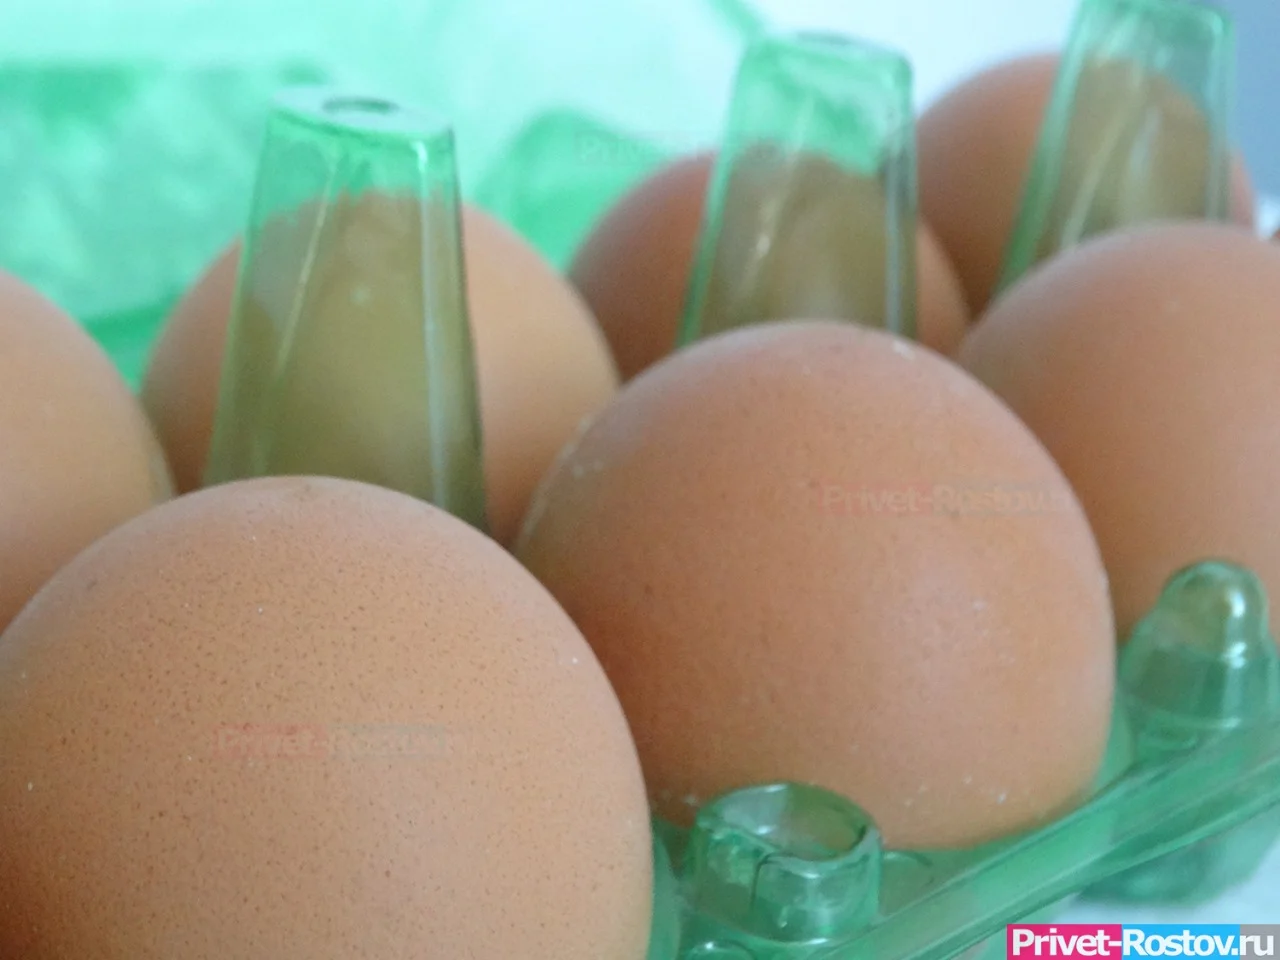 В Ростове жители стали сметать яйца с полок в магазинах по 200 рублей в декабре